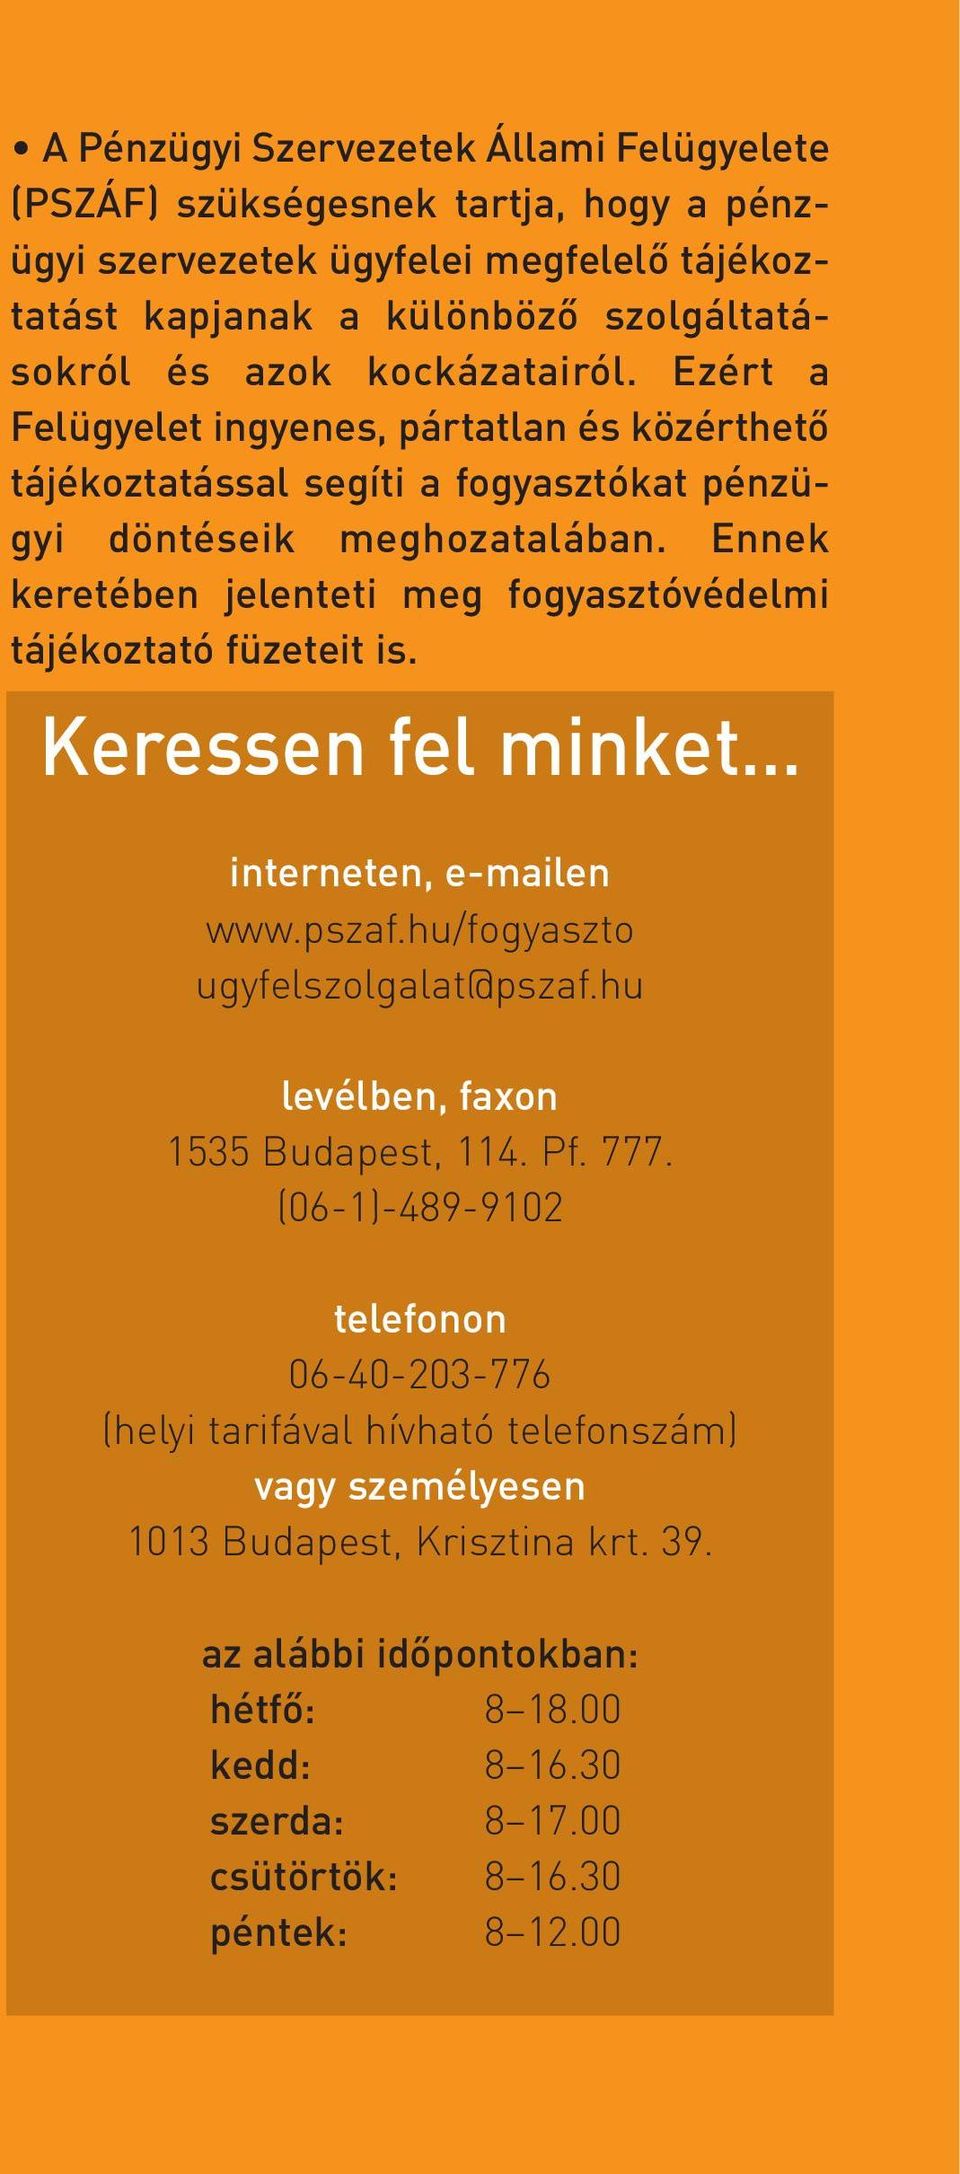 Ennek keretében jelenteti meg fogyasztóvédelmi tájékoztató füzeteit is. Keressen fel minket interneten, e-mailen www.pszaf.hu/fogyaszto ugyfelszolgalat@pszaf.